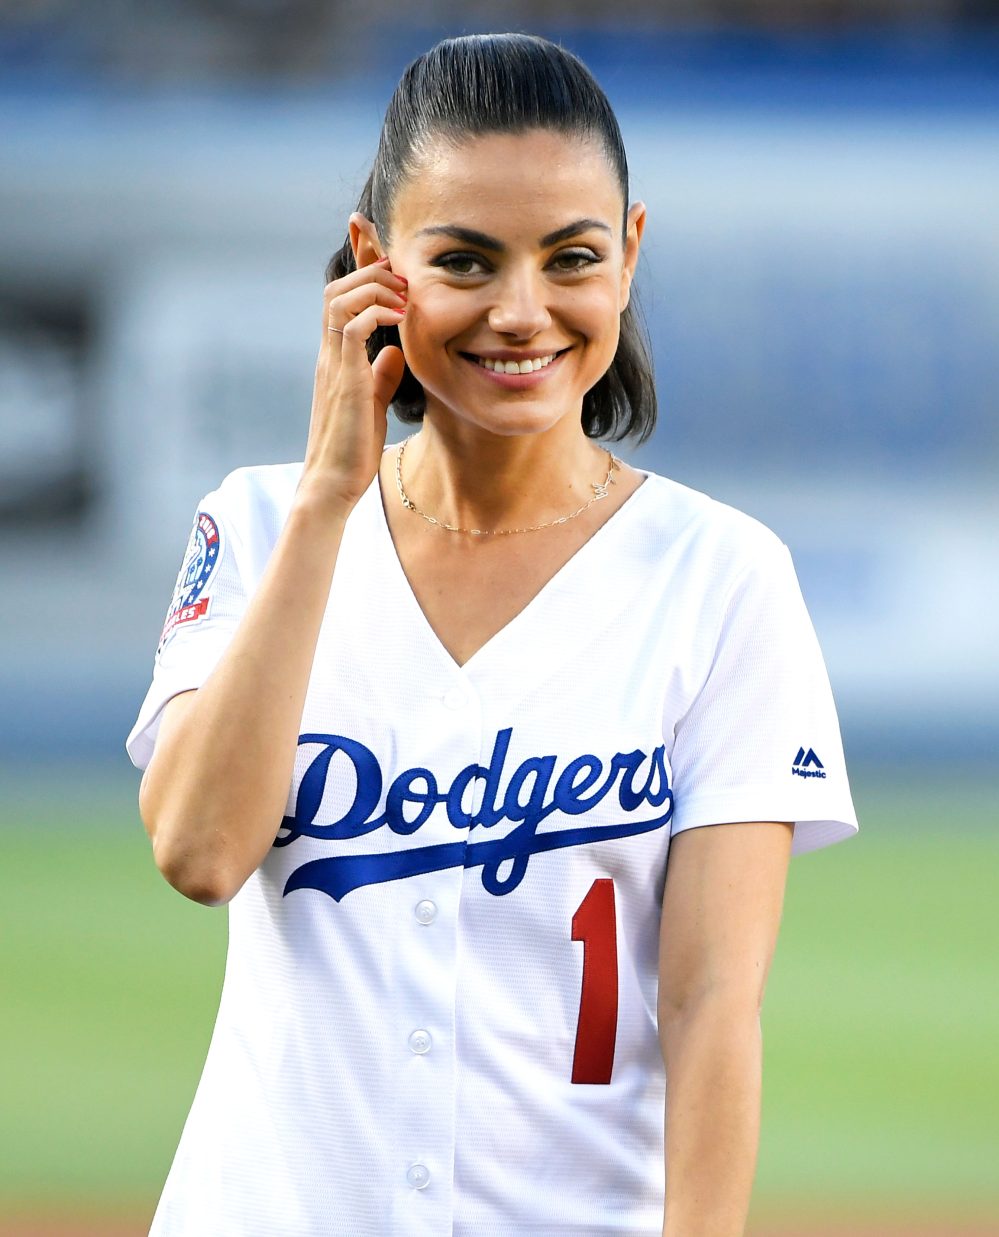 Mila Kunis Wears K Kane Necklace to Throw Dodgers Pitch